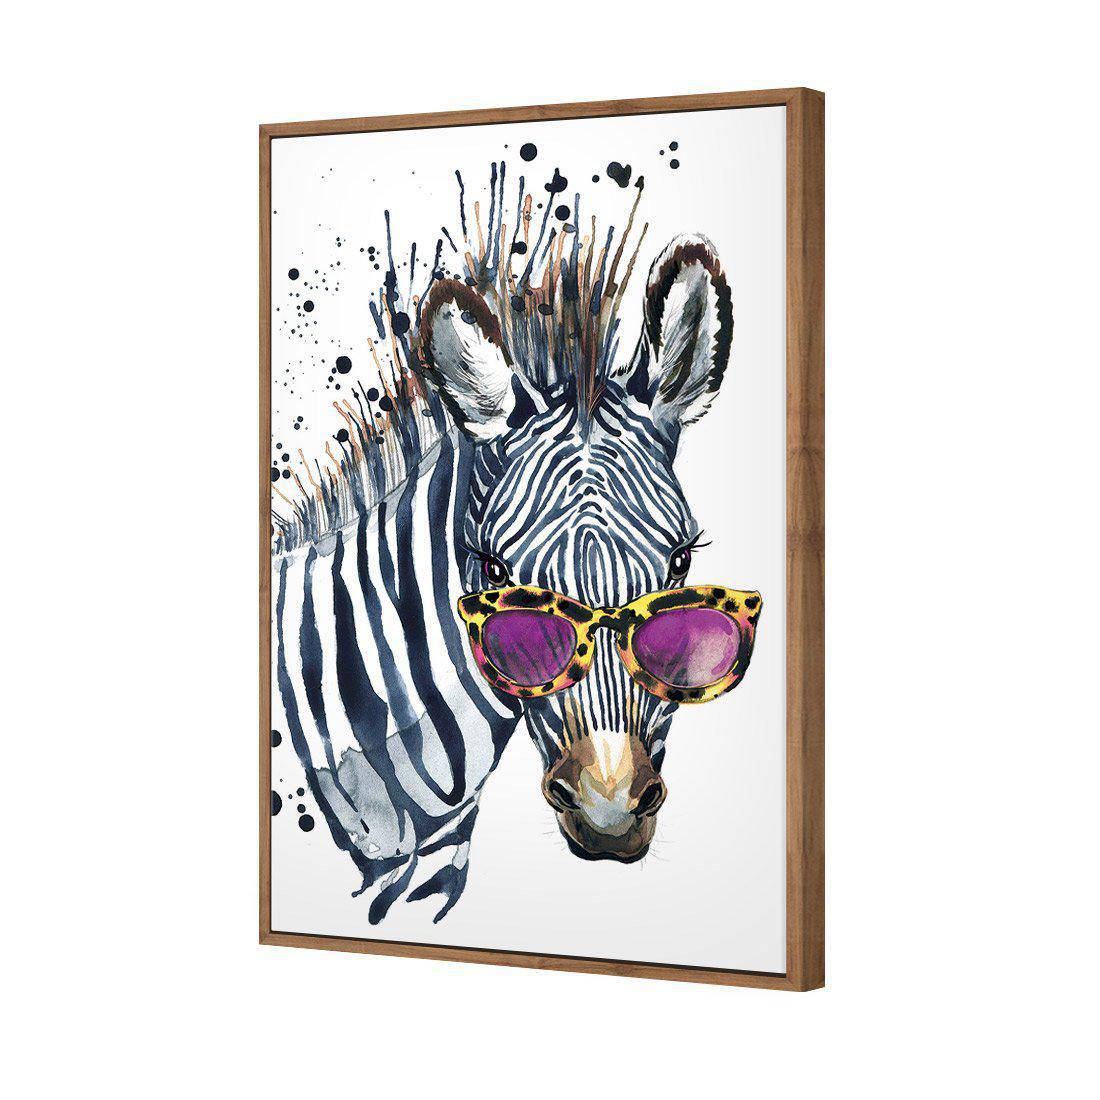 Cool Zebra Canvas Art-Canvas-Wall Art Designs-45x30cm-Canvas - Natural Frame-Wall Art Designs